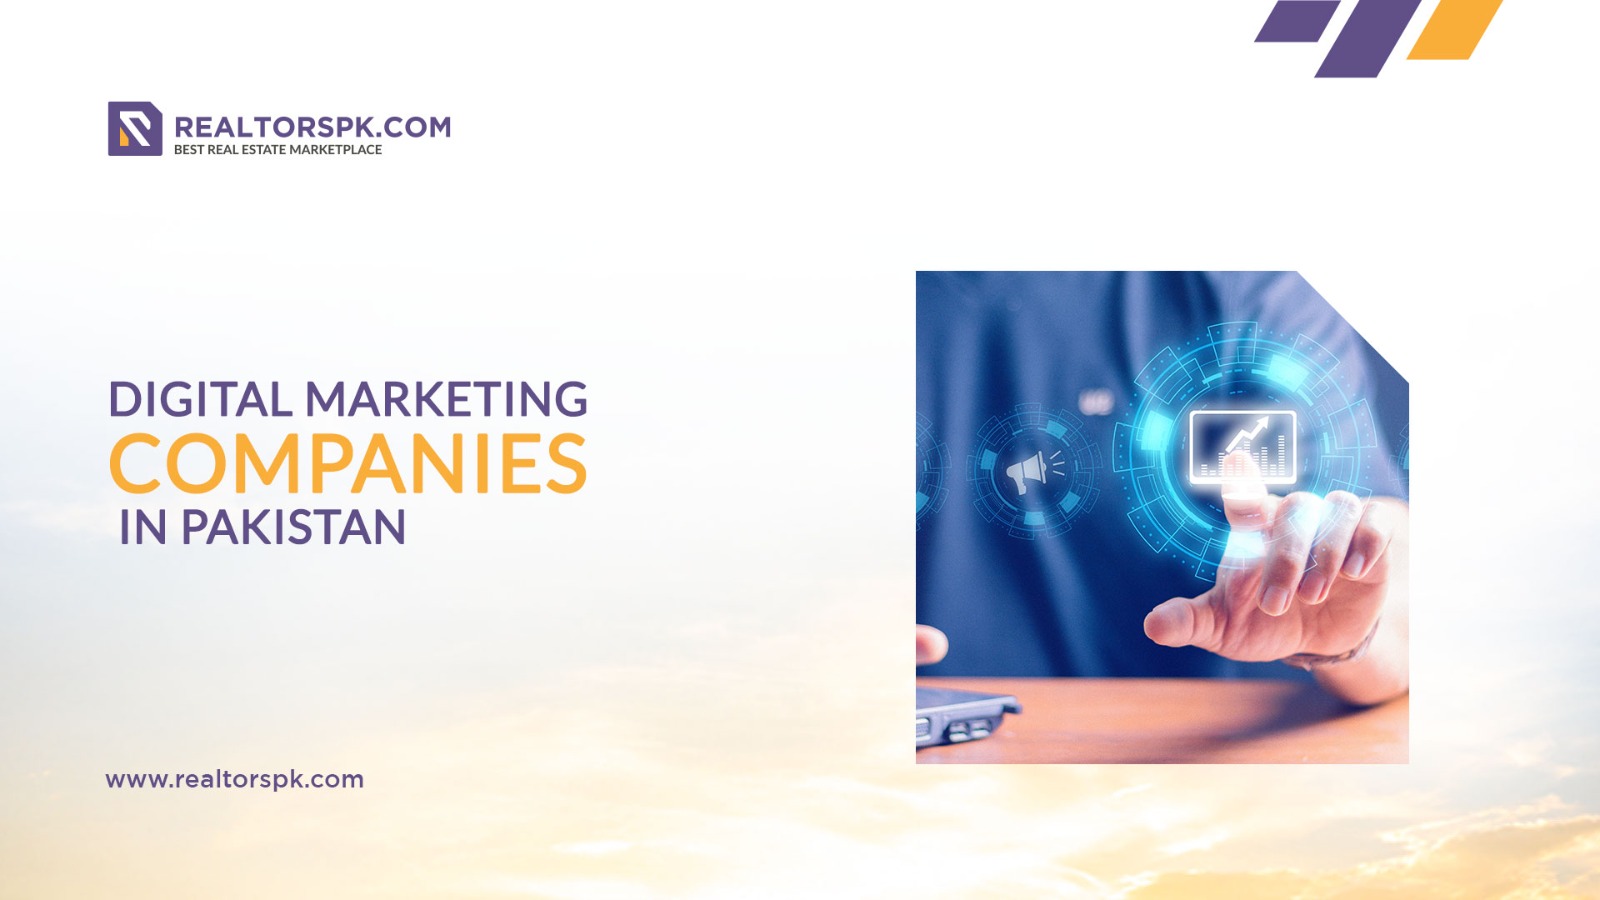 Digital Marketing companies in Pakistan-Realtorspk